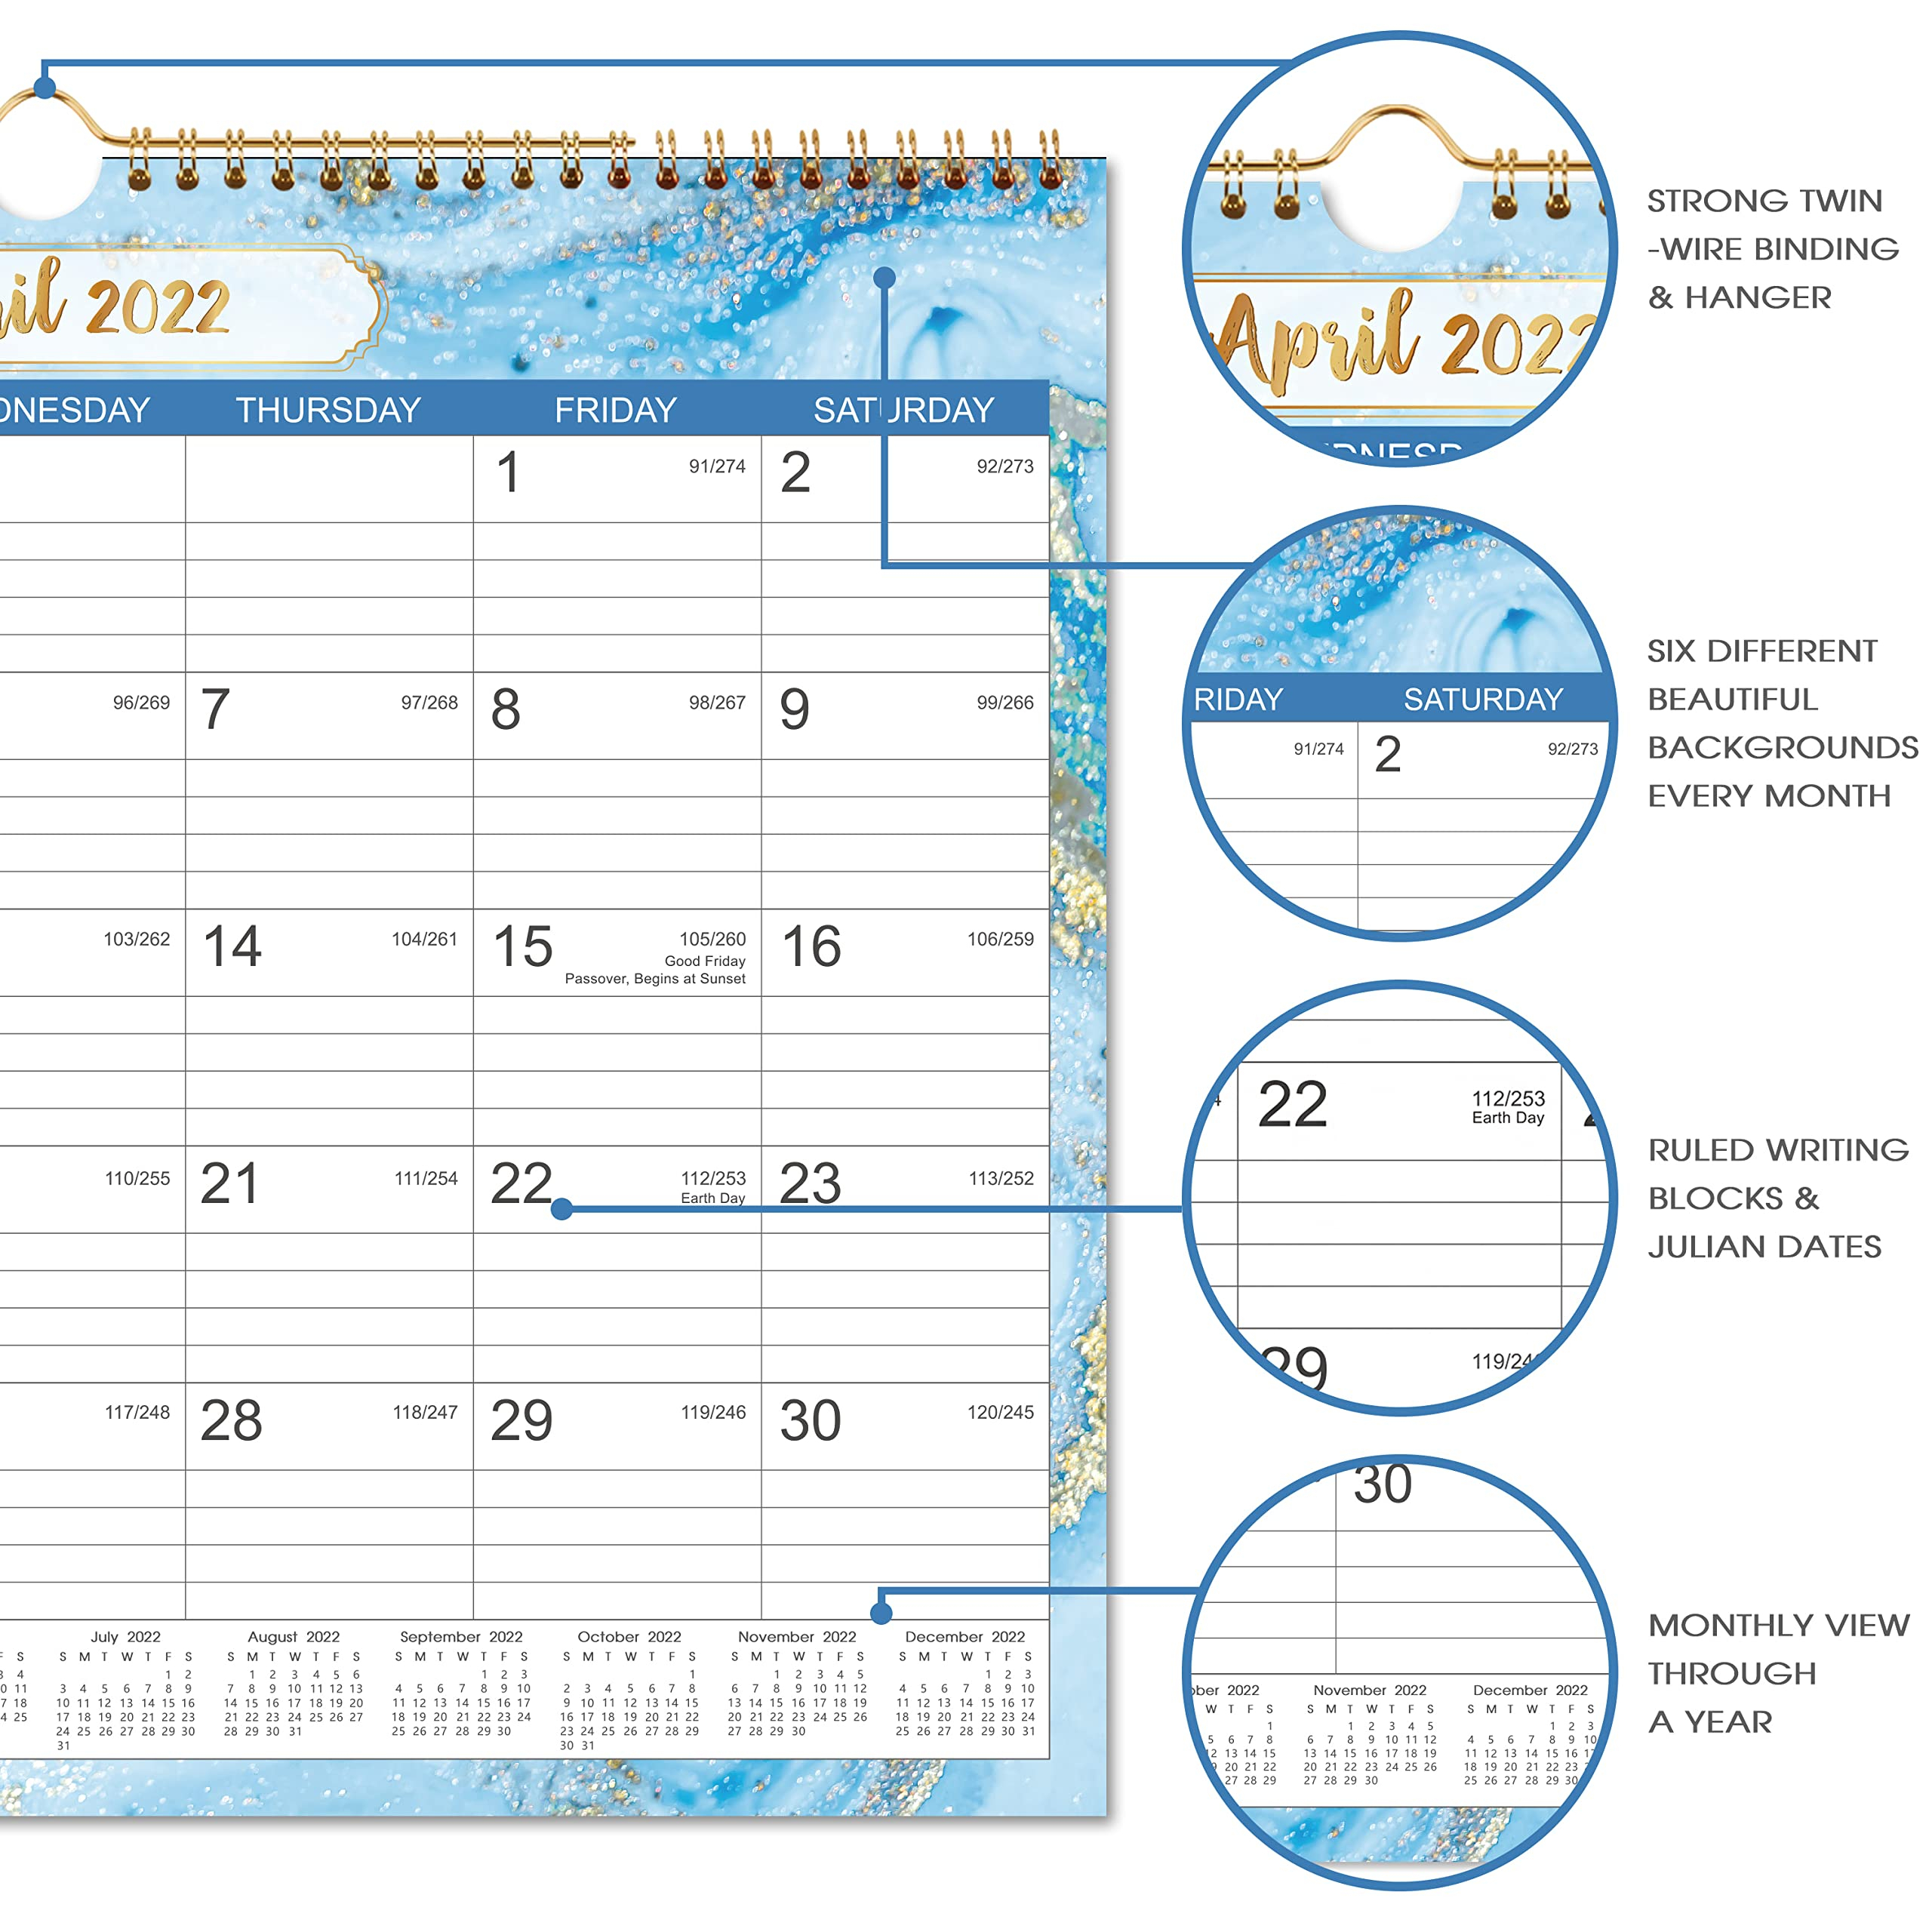 2022 Calendar - Wall Calendar 2022 With Julian Date, Jan